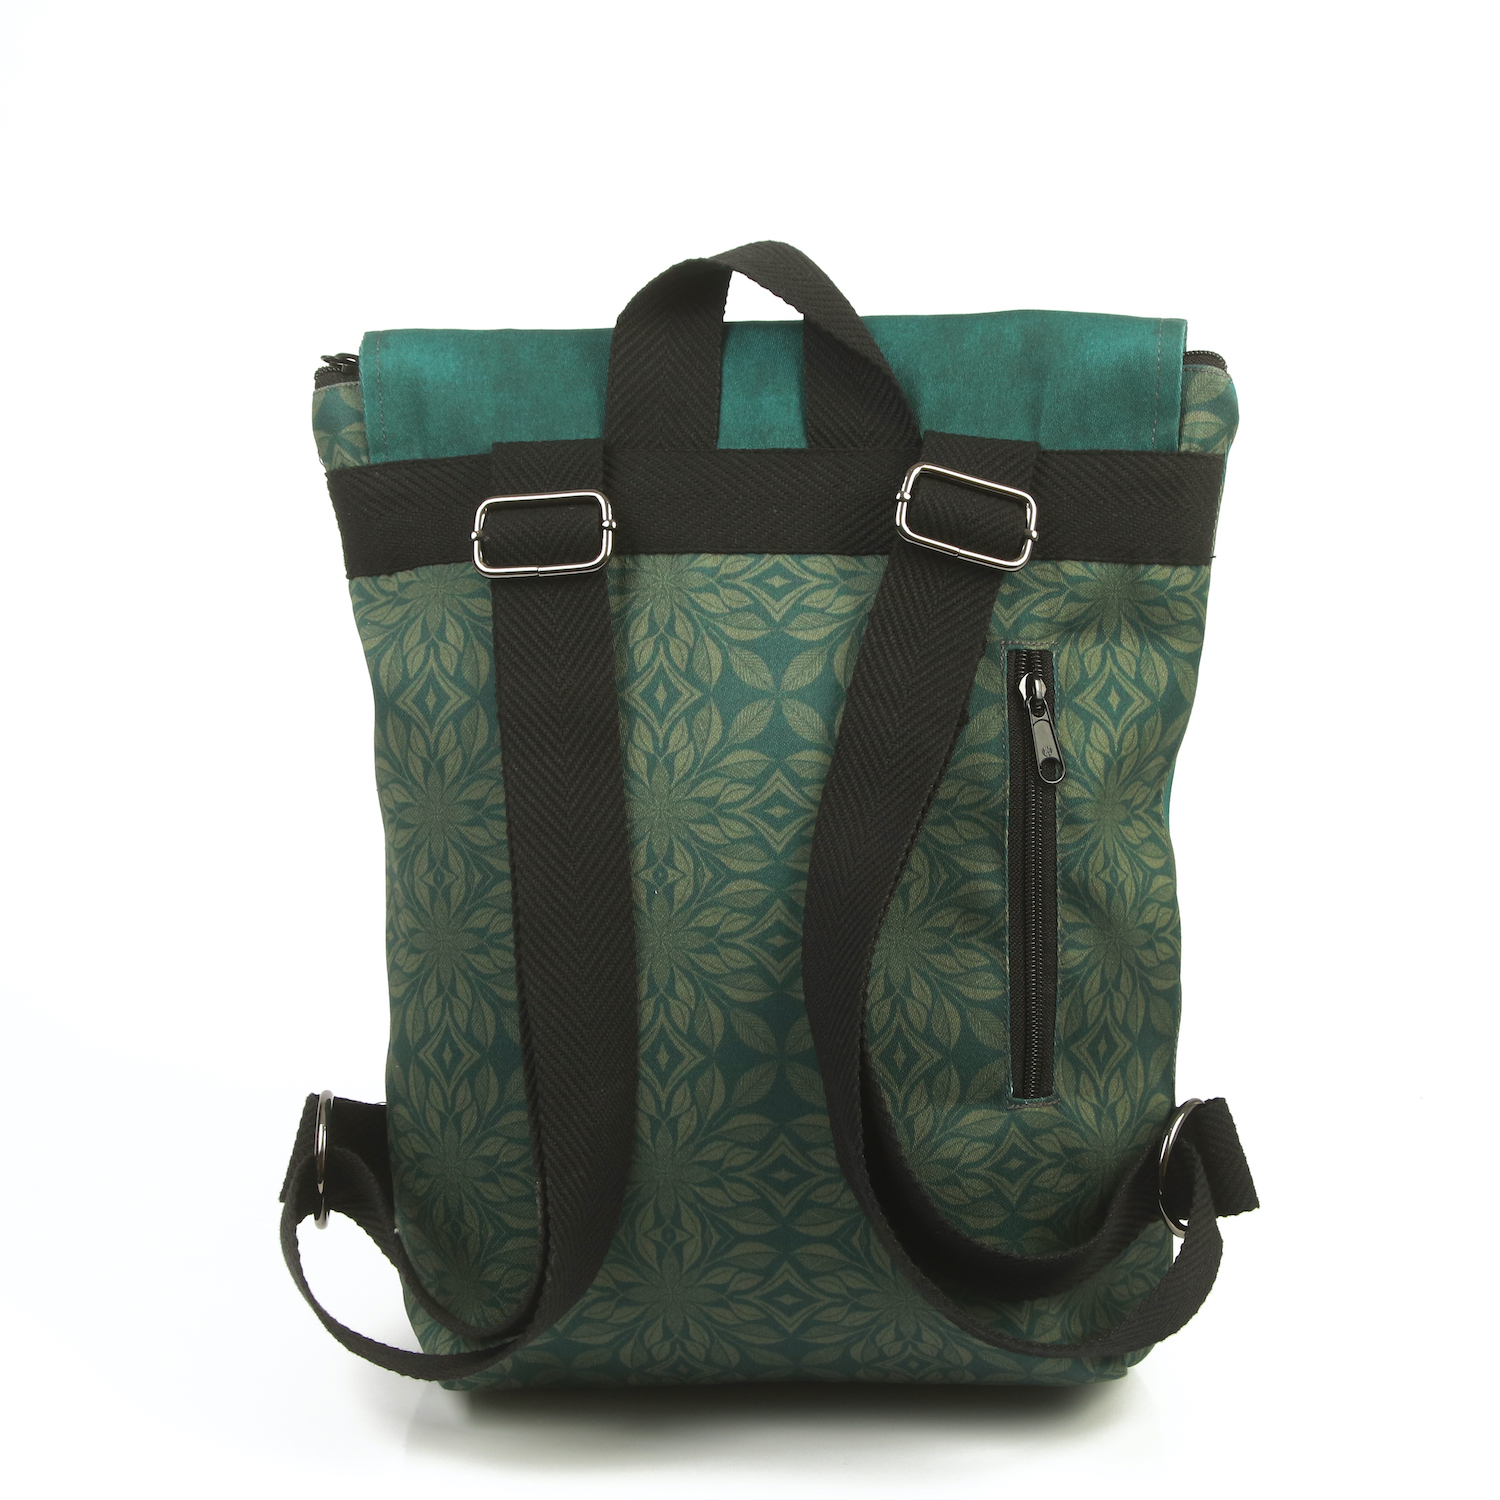 LazyDayz-Designs-Backpack-γυναικείος-σάκος-πλάτης-χειροποίητος bb0704c